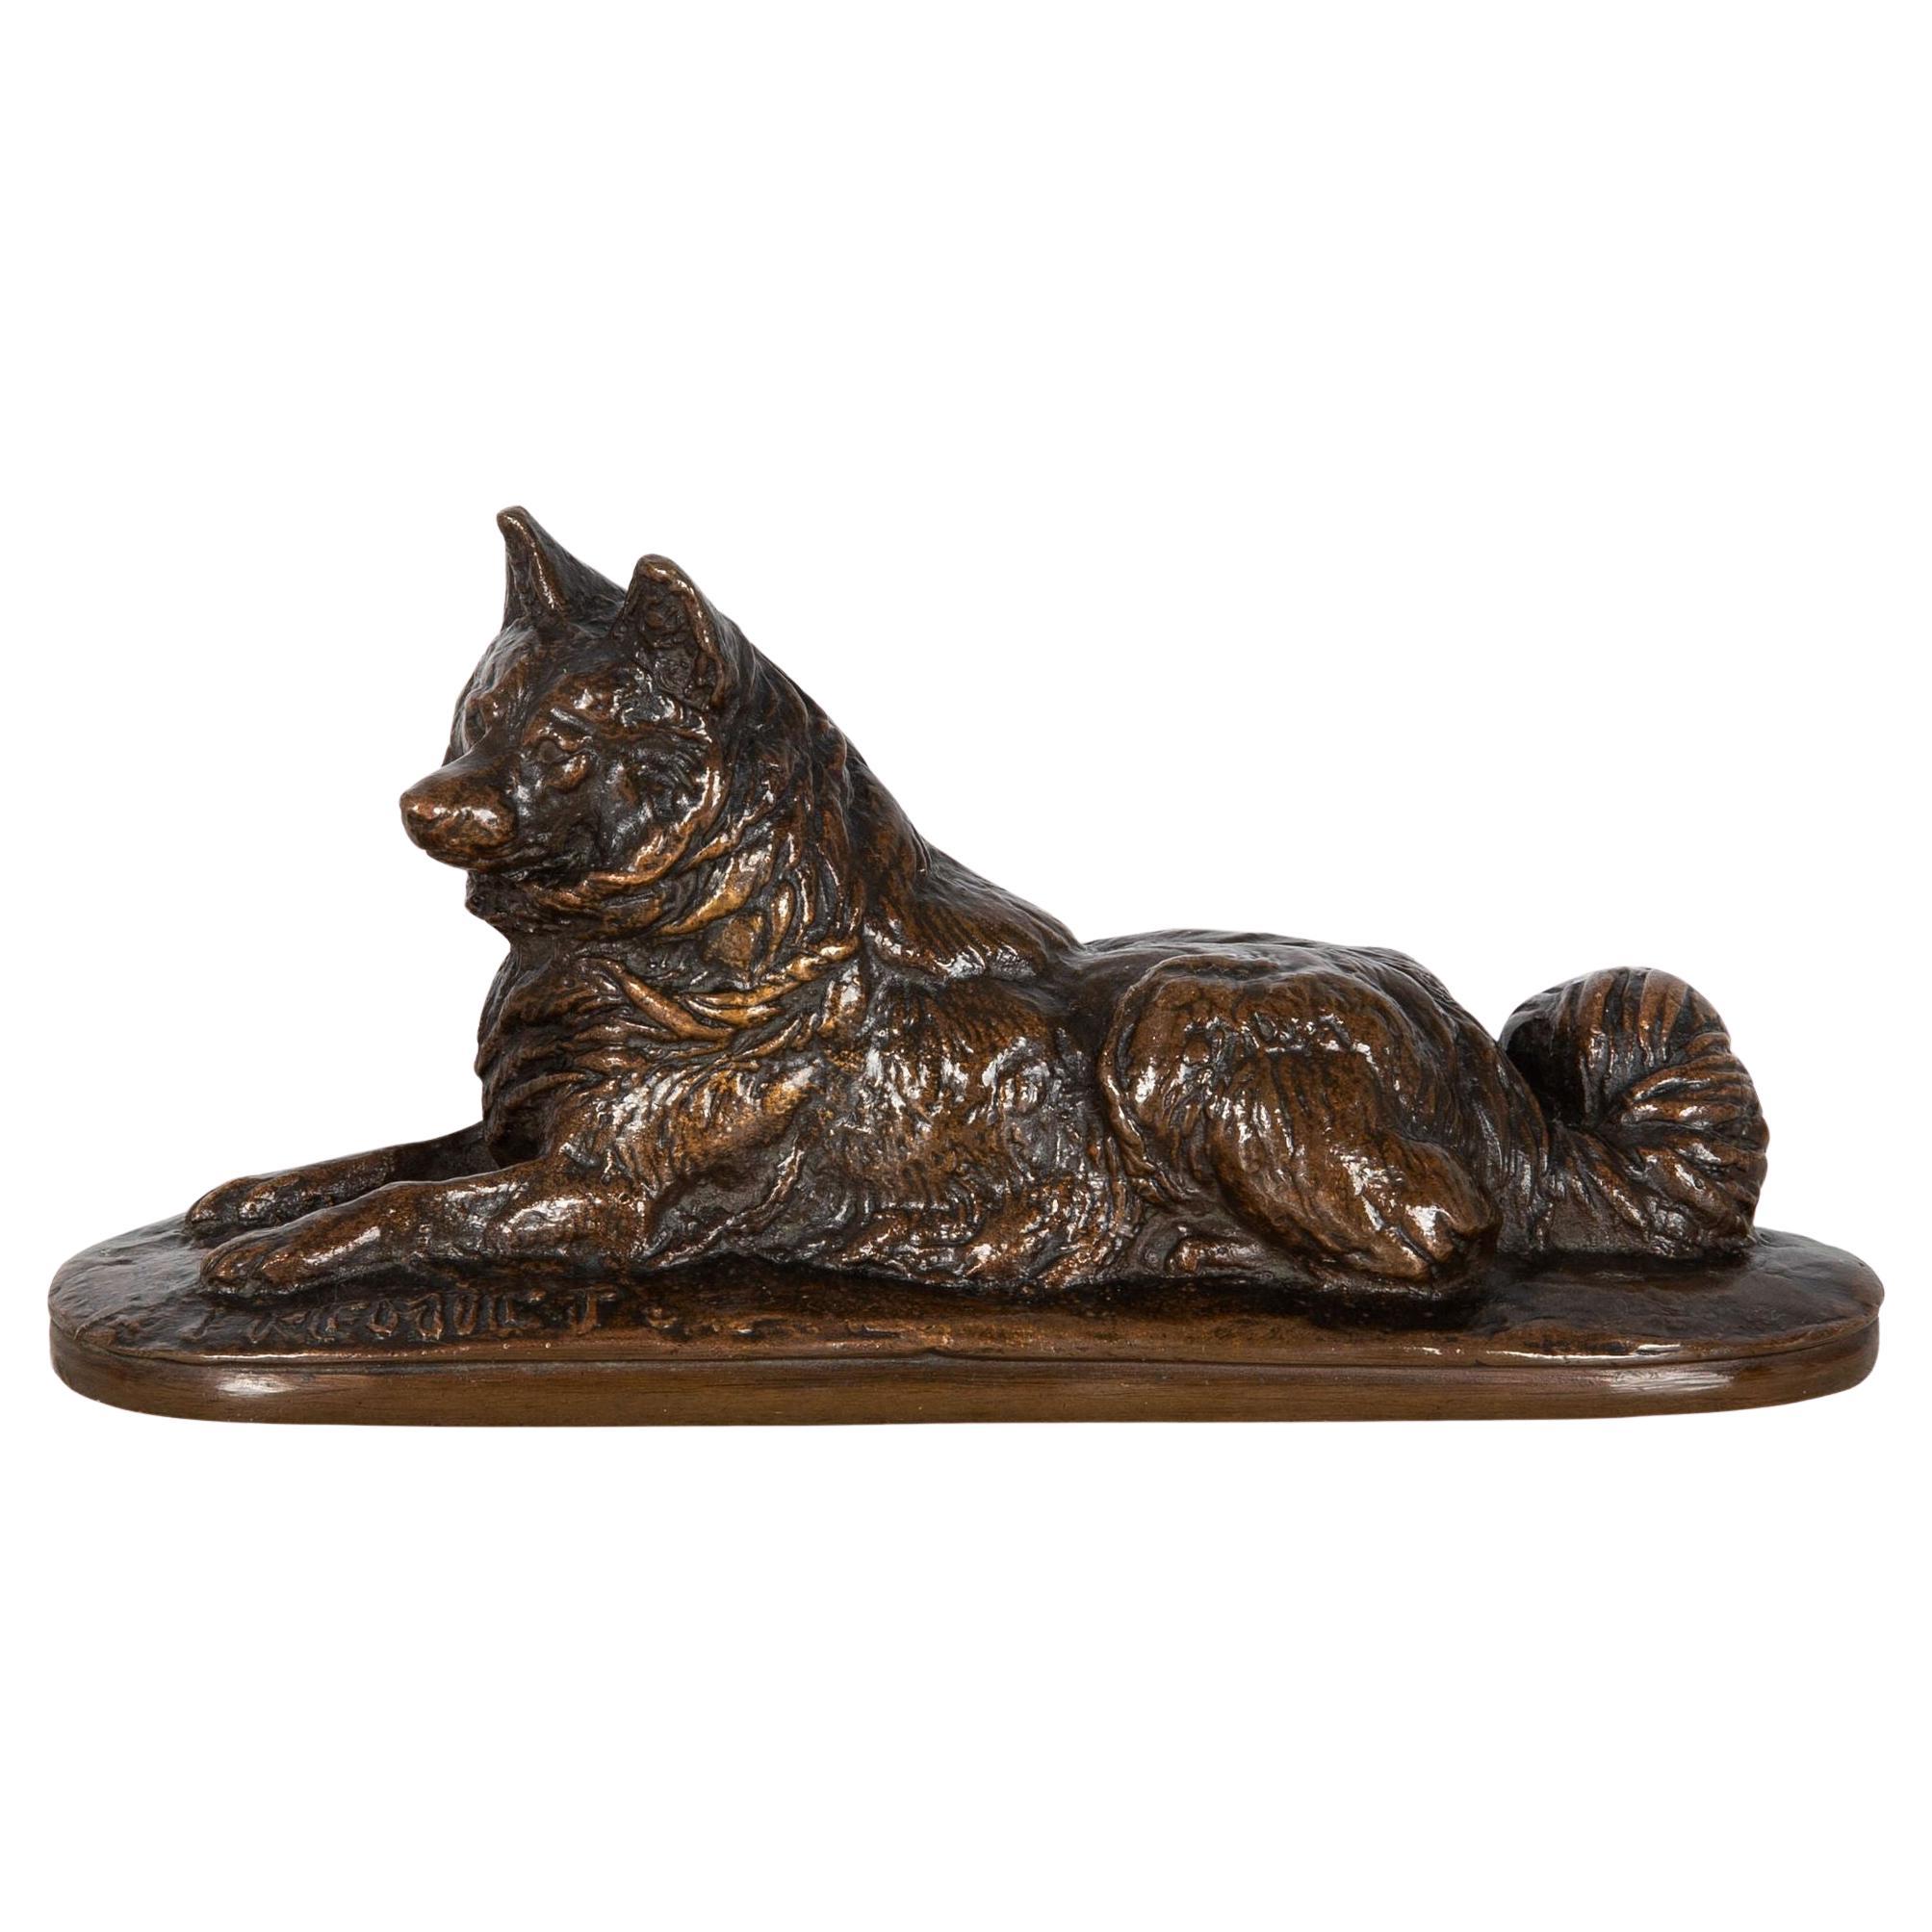 Rare Emmanuel Fremiet “Husky Dog” Bronze Sculpture, Charles More cast no. 38 For Sale